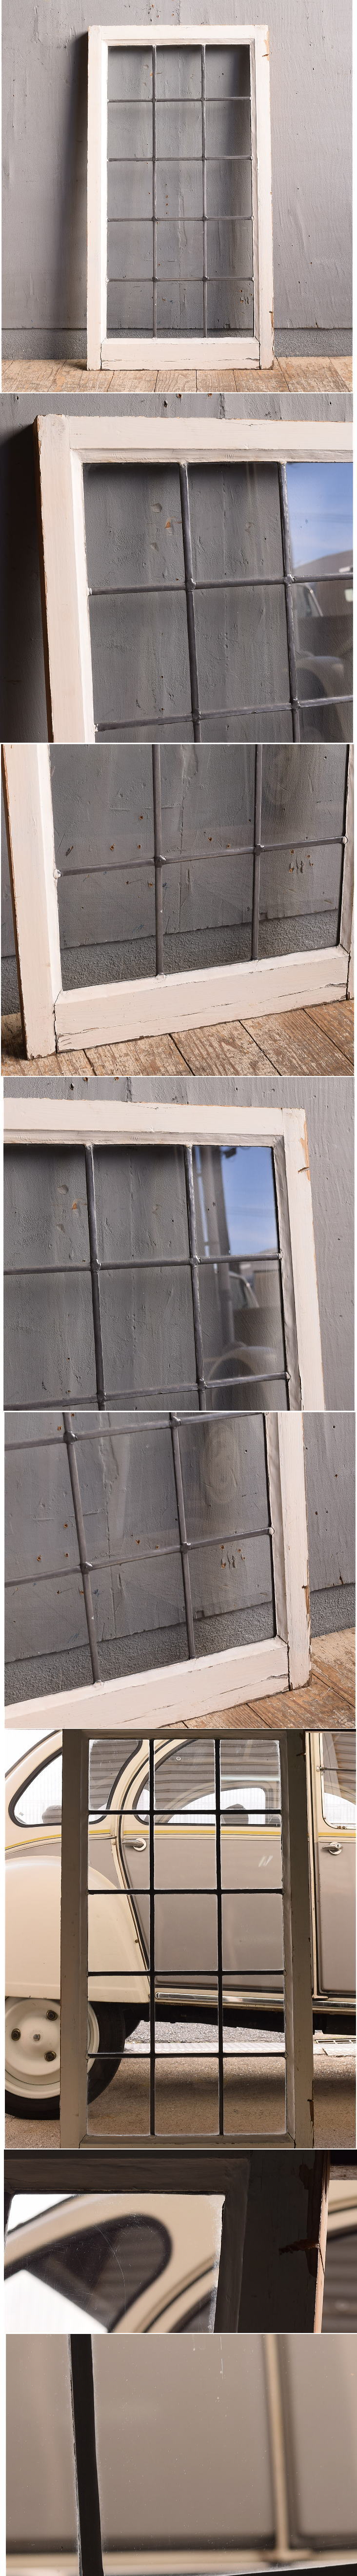 イギリス アンティーク 窓 無色透明 12249